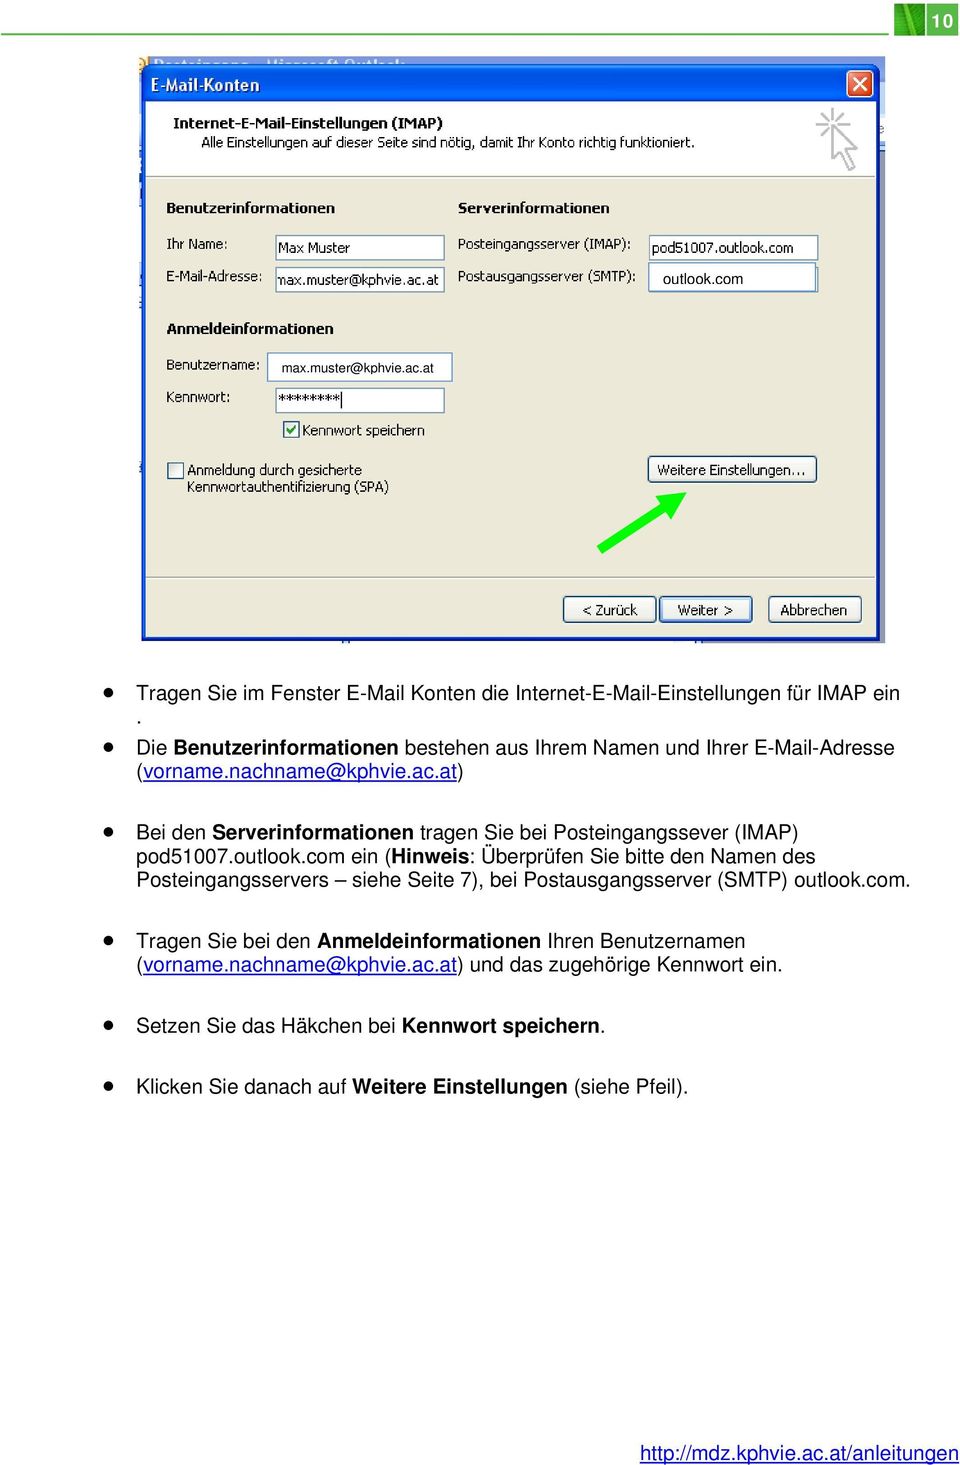 outlook.com ein (Hinweis: Überprüfen Sie bitte den Namen des Posteingangsservers siehe Seite 7), bei Postausgangsserver (SMTP) outlook.com. Tragen Sie bei den Anmeldeinformationen Ihren Benutzernamen (vorname.